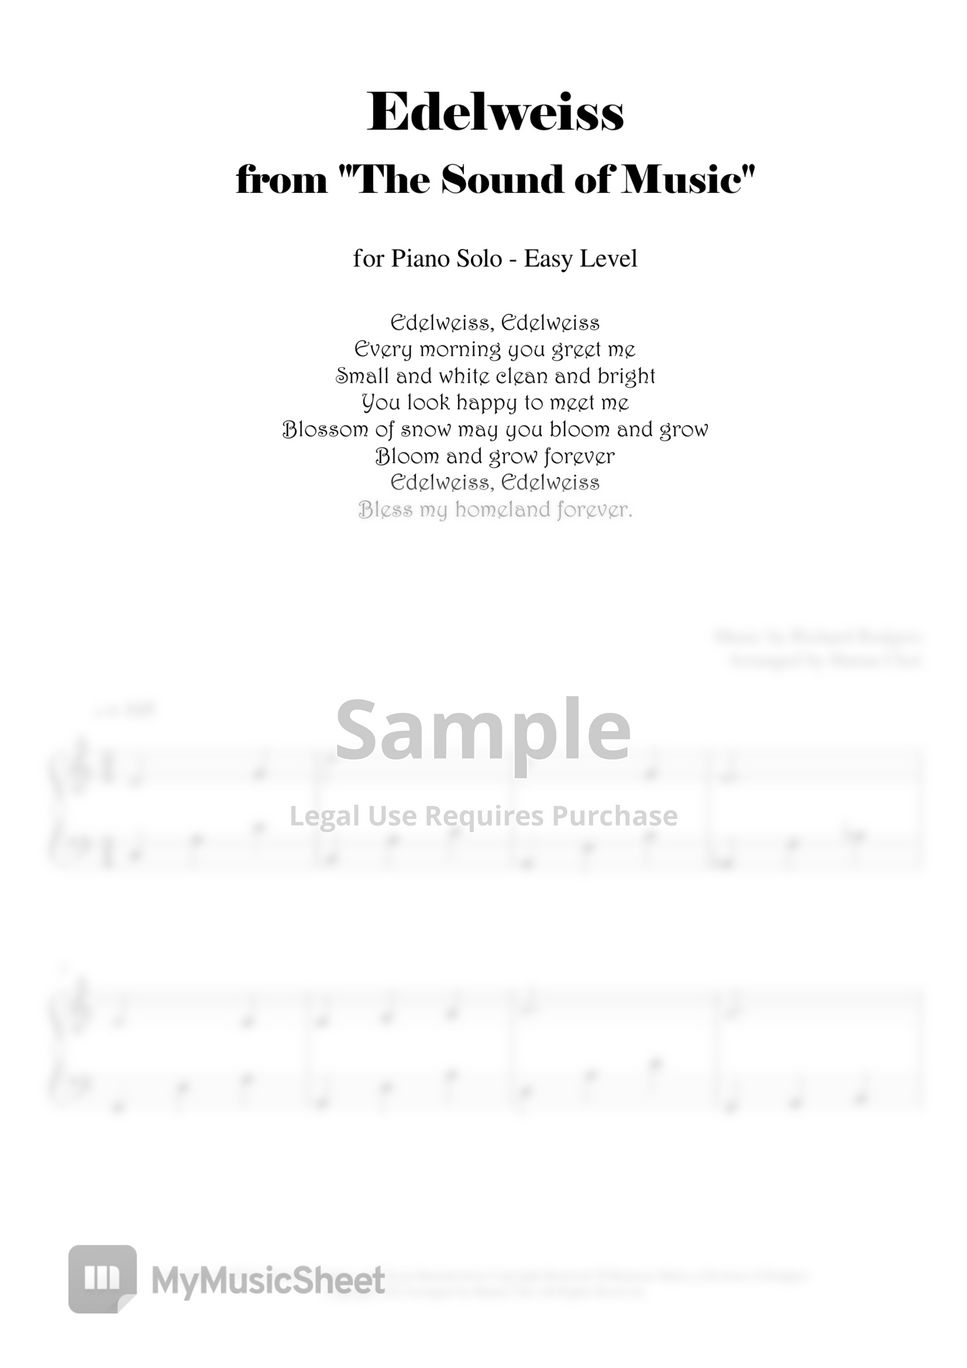 R.Rodgers - Edelweiss 에델바이스 - 사운드 오브 뮤직 (피아노 솔로 쉬운 악보)